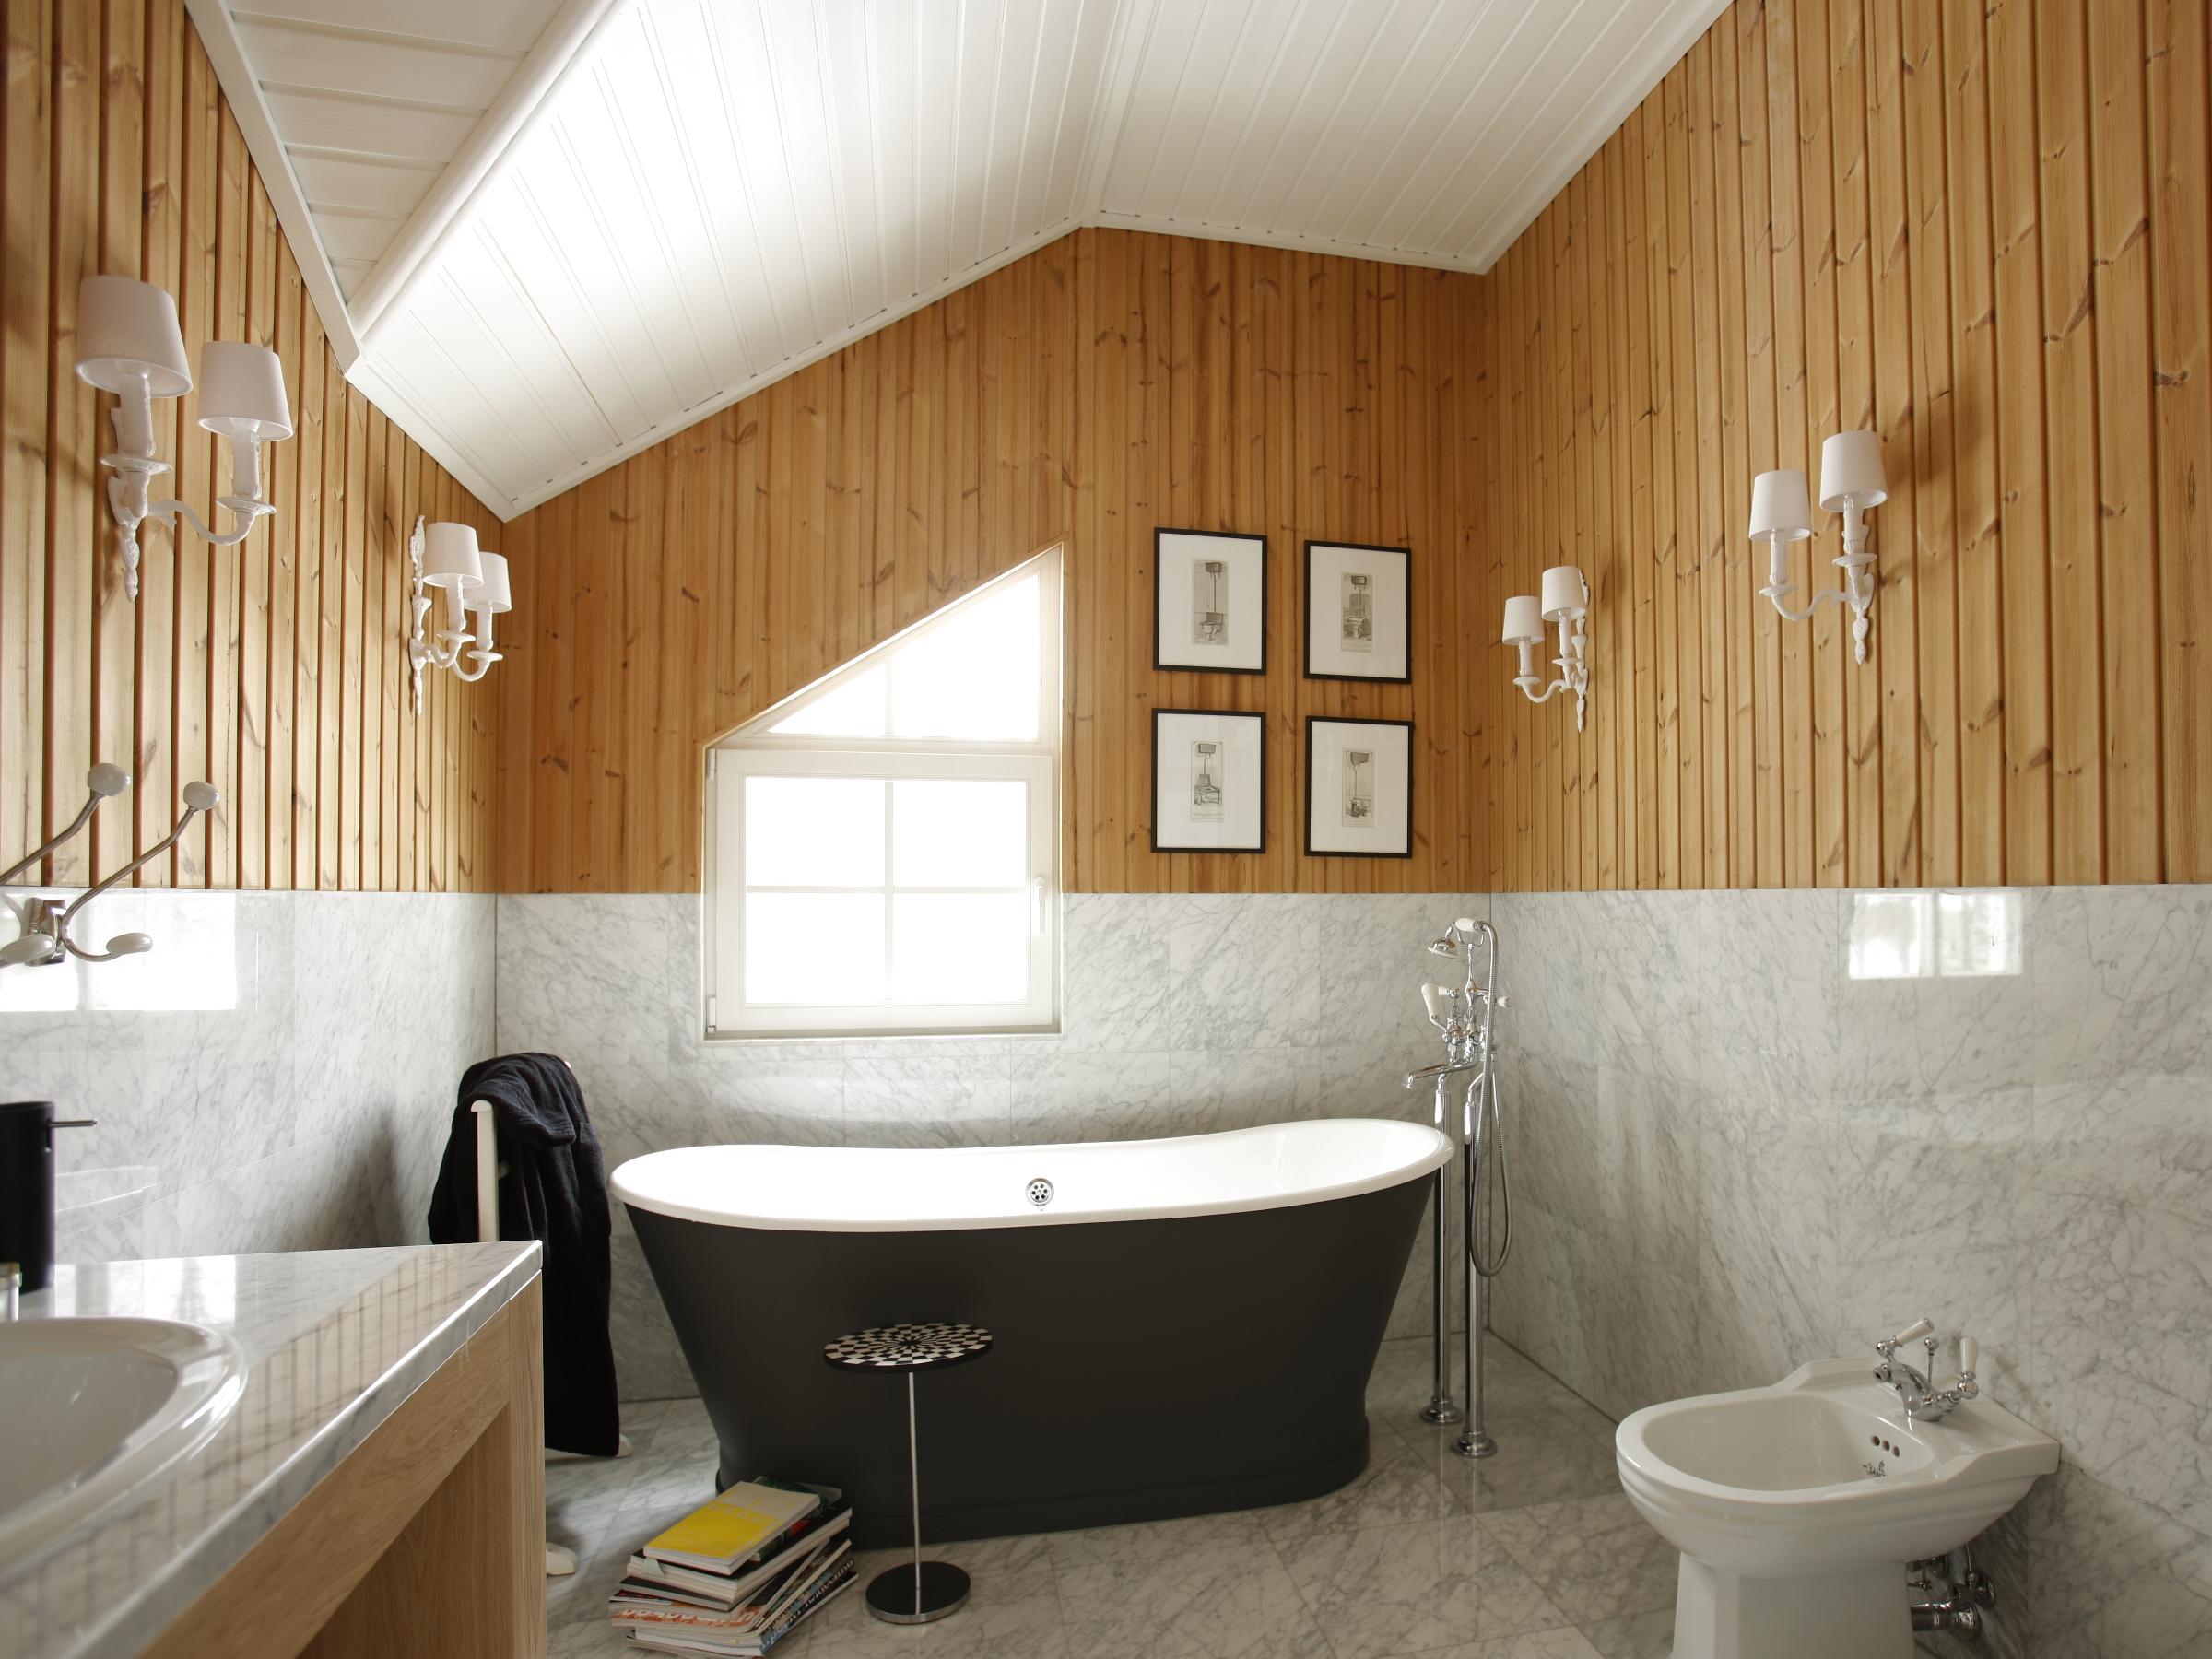 Отличный вариант для ванной комнаты – натяжной потолок, который порадует вас своей практичностью и разнообразием расцветок